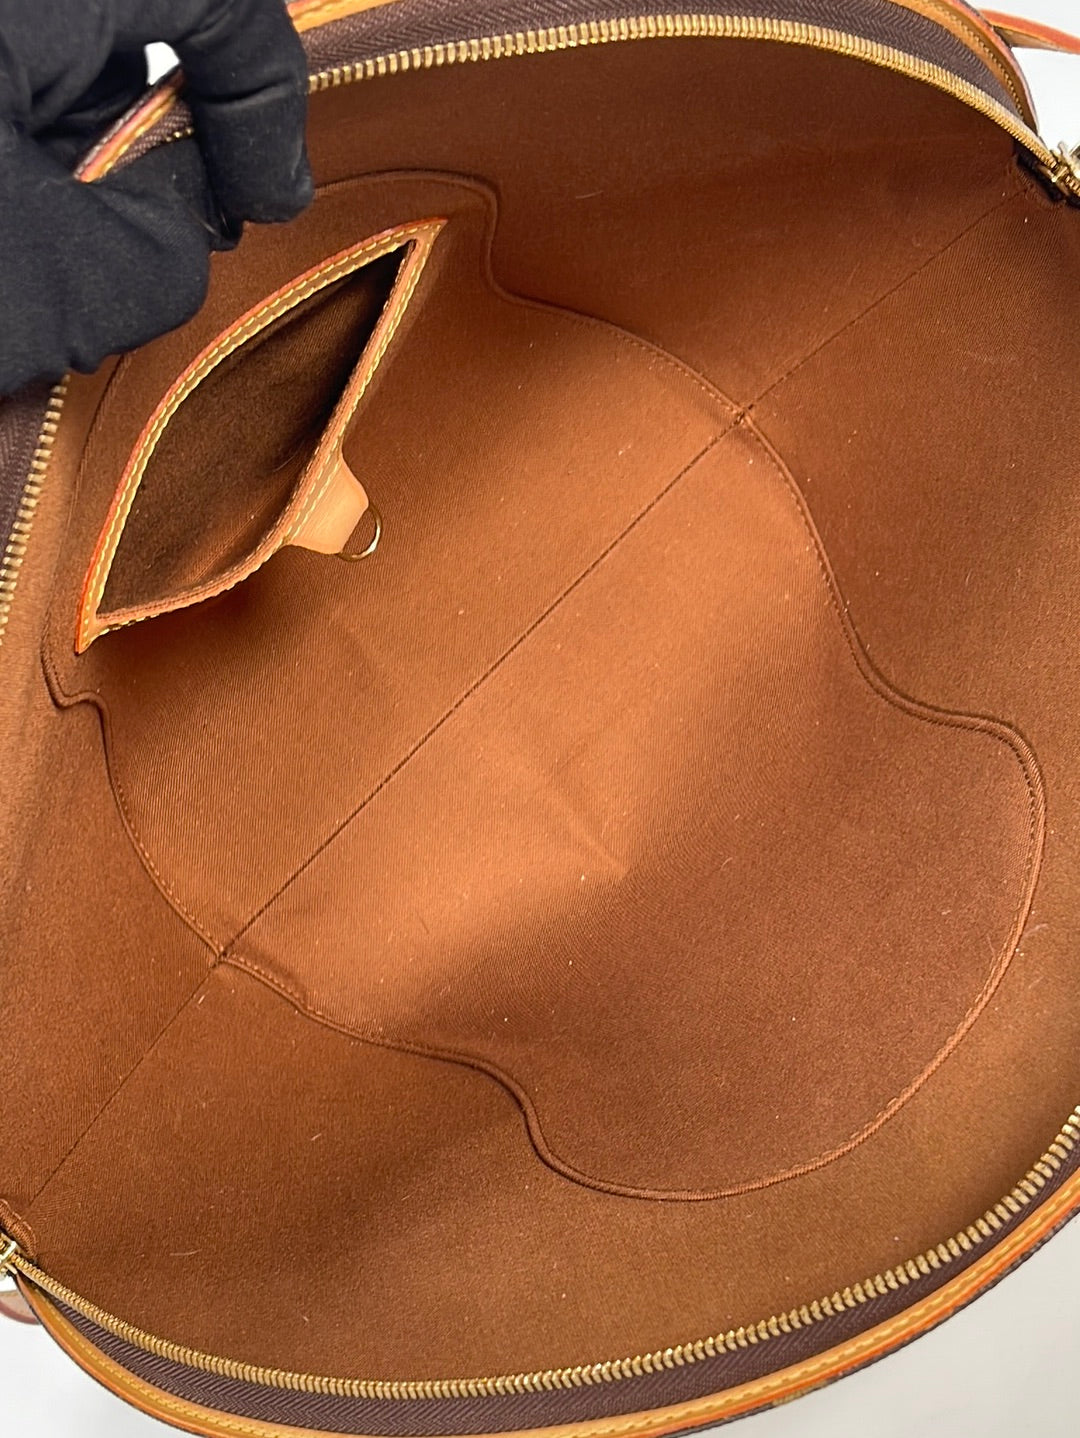 Shop Louis Vuitton Handbags (M46212) by LESSISMORE☆